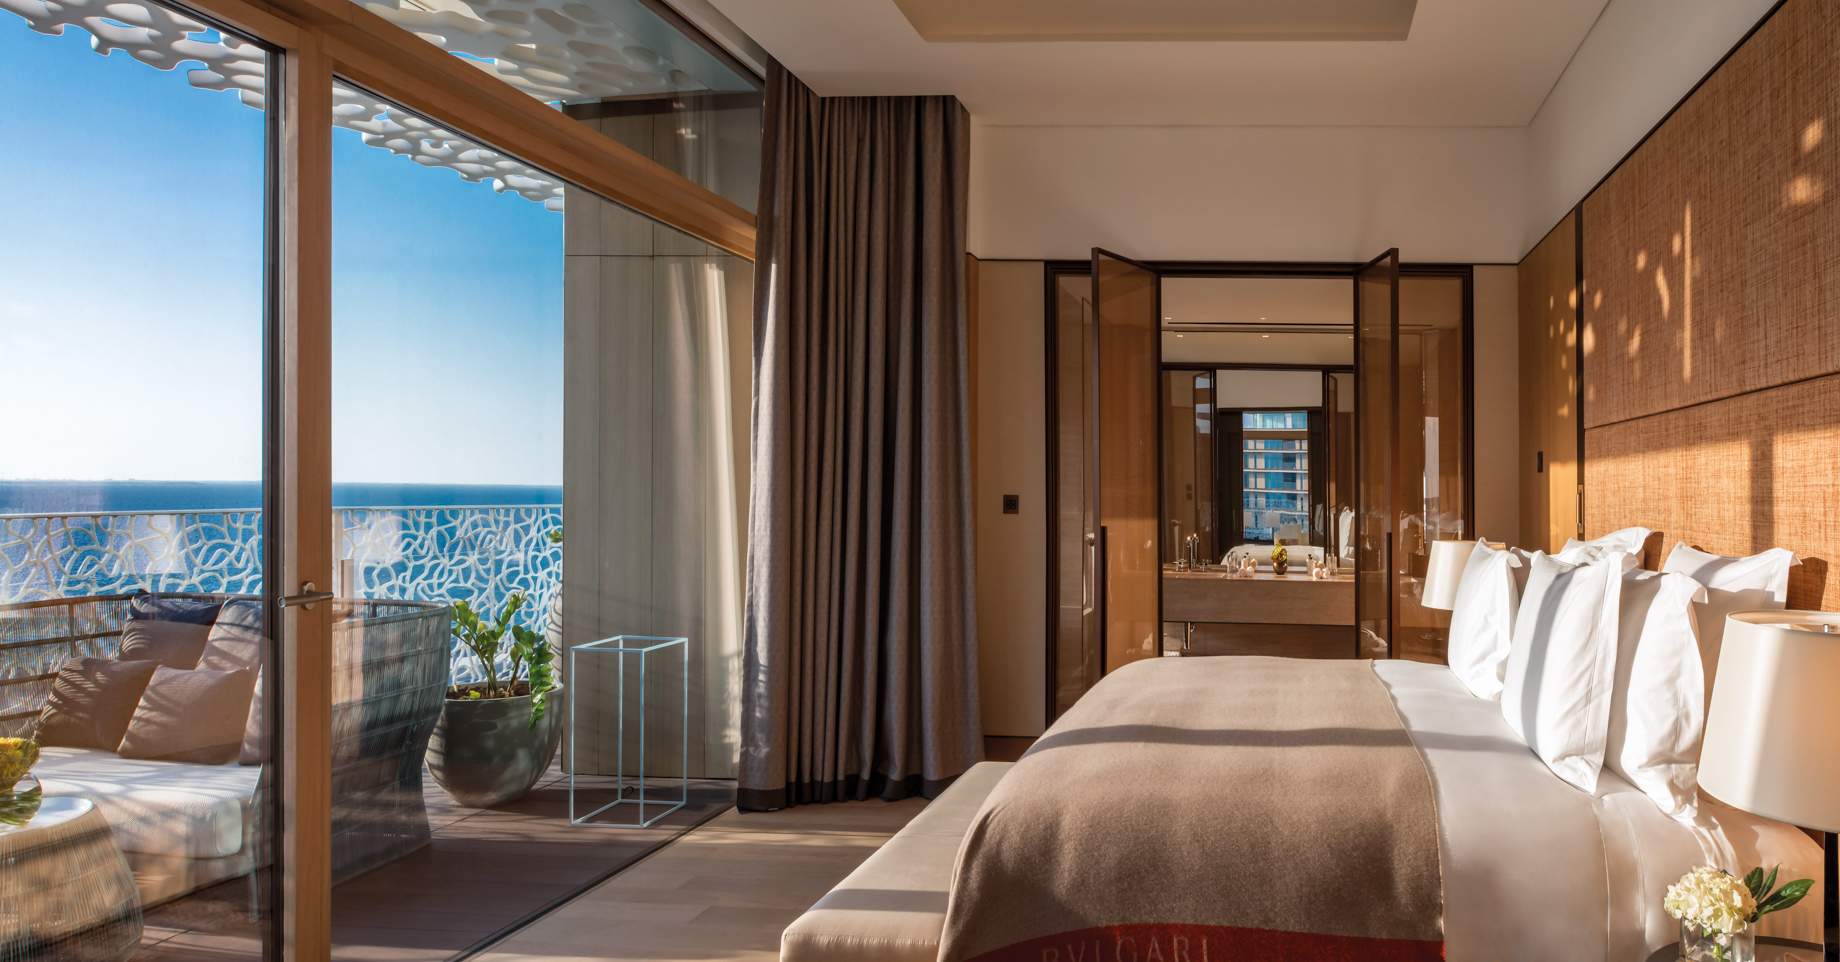 Bvlgari Resort Dubai – Jumeira Bay Island, Dubai, UAE – Bulgari Suite Bedroom